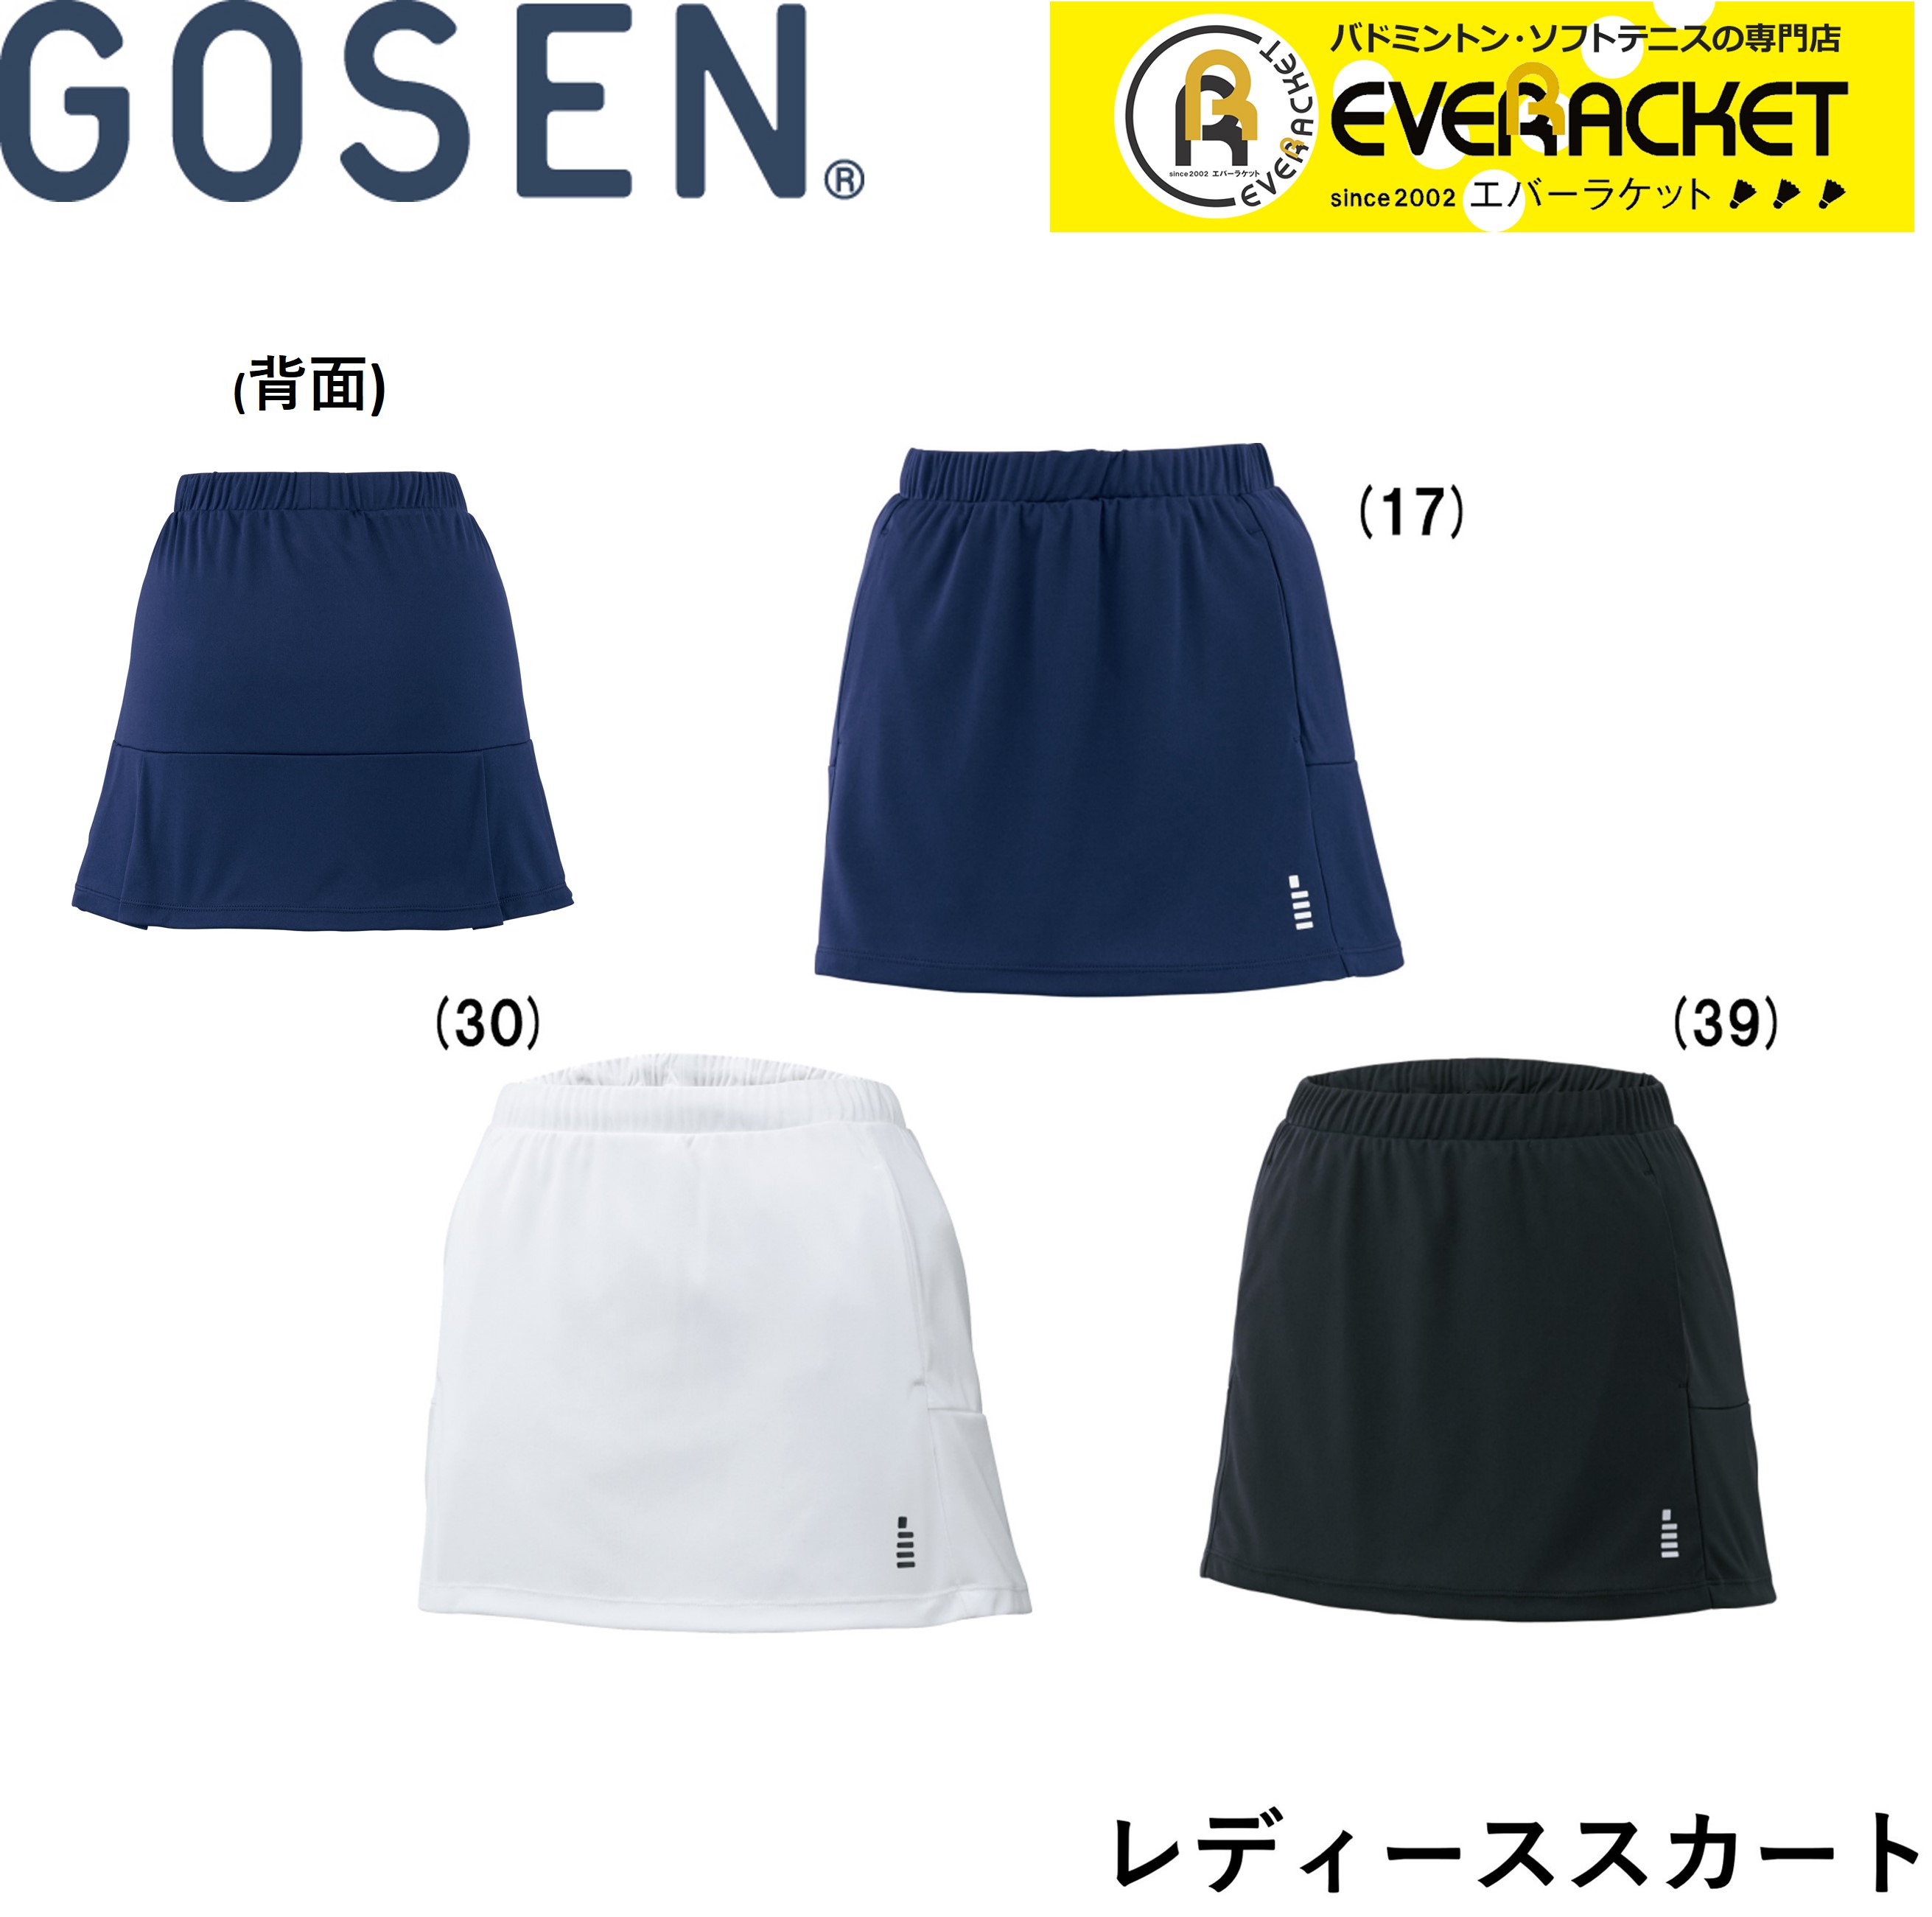 2020年SS 『1年保証』 GOSEN：レディーススカート 交換無料 ポスト投函送料無料 ゴーセン GOSEN ウエア レディーススカート S1601 バドミントン ソフトテニス